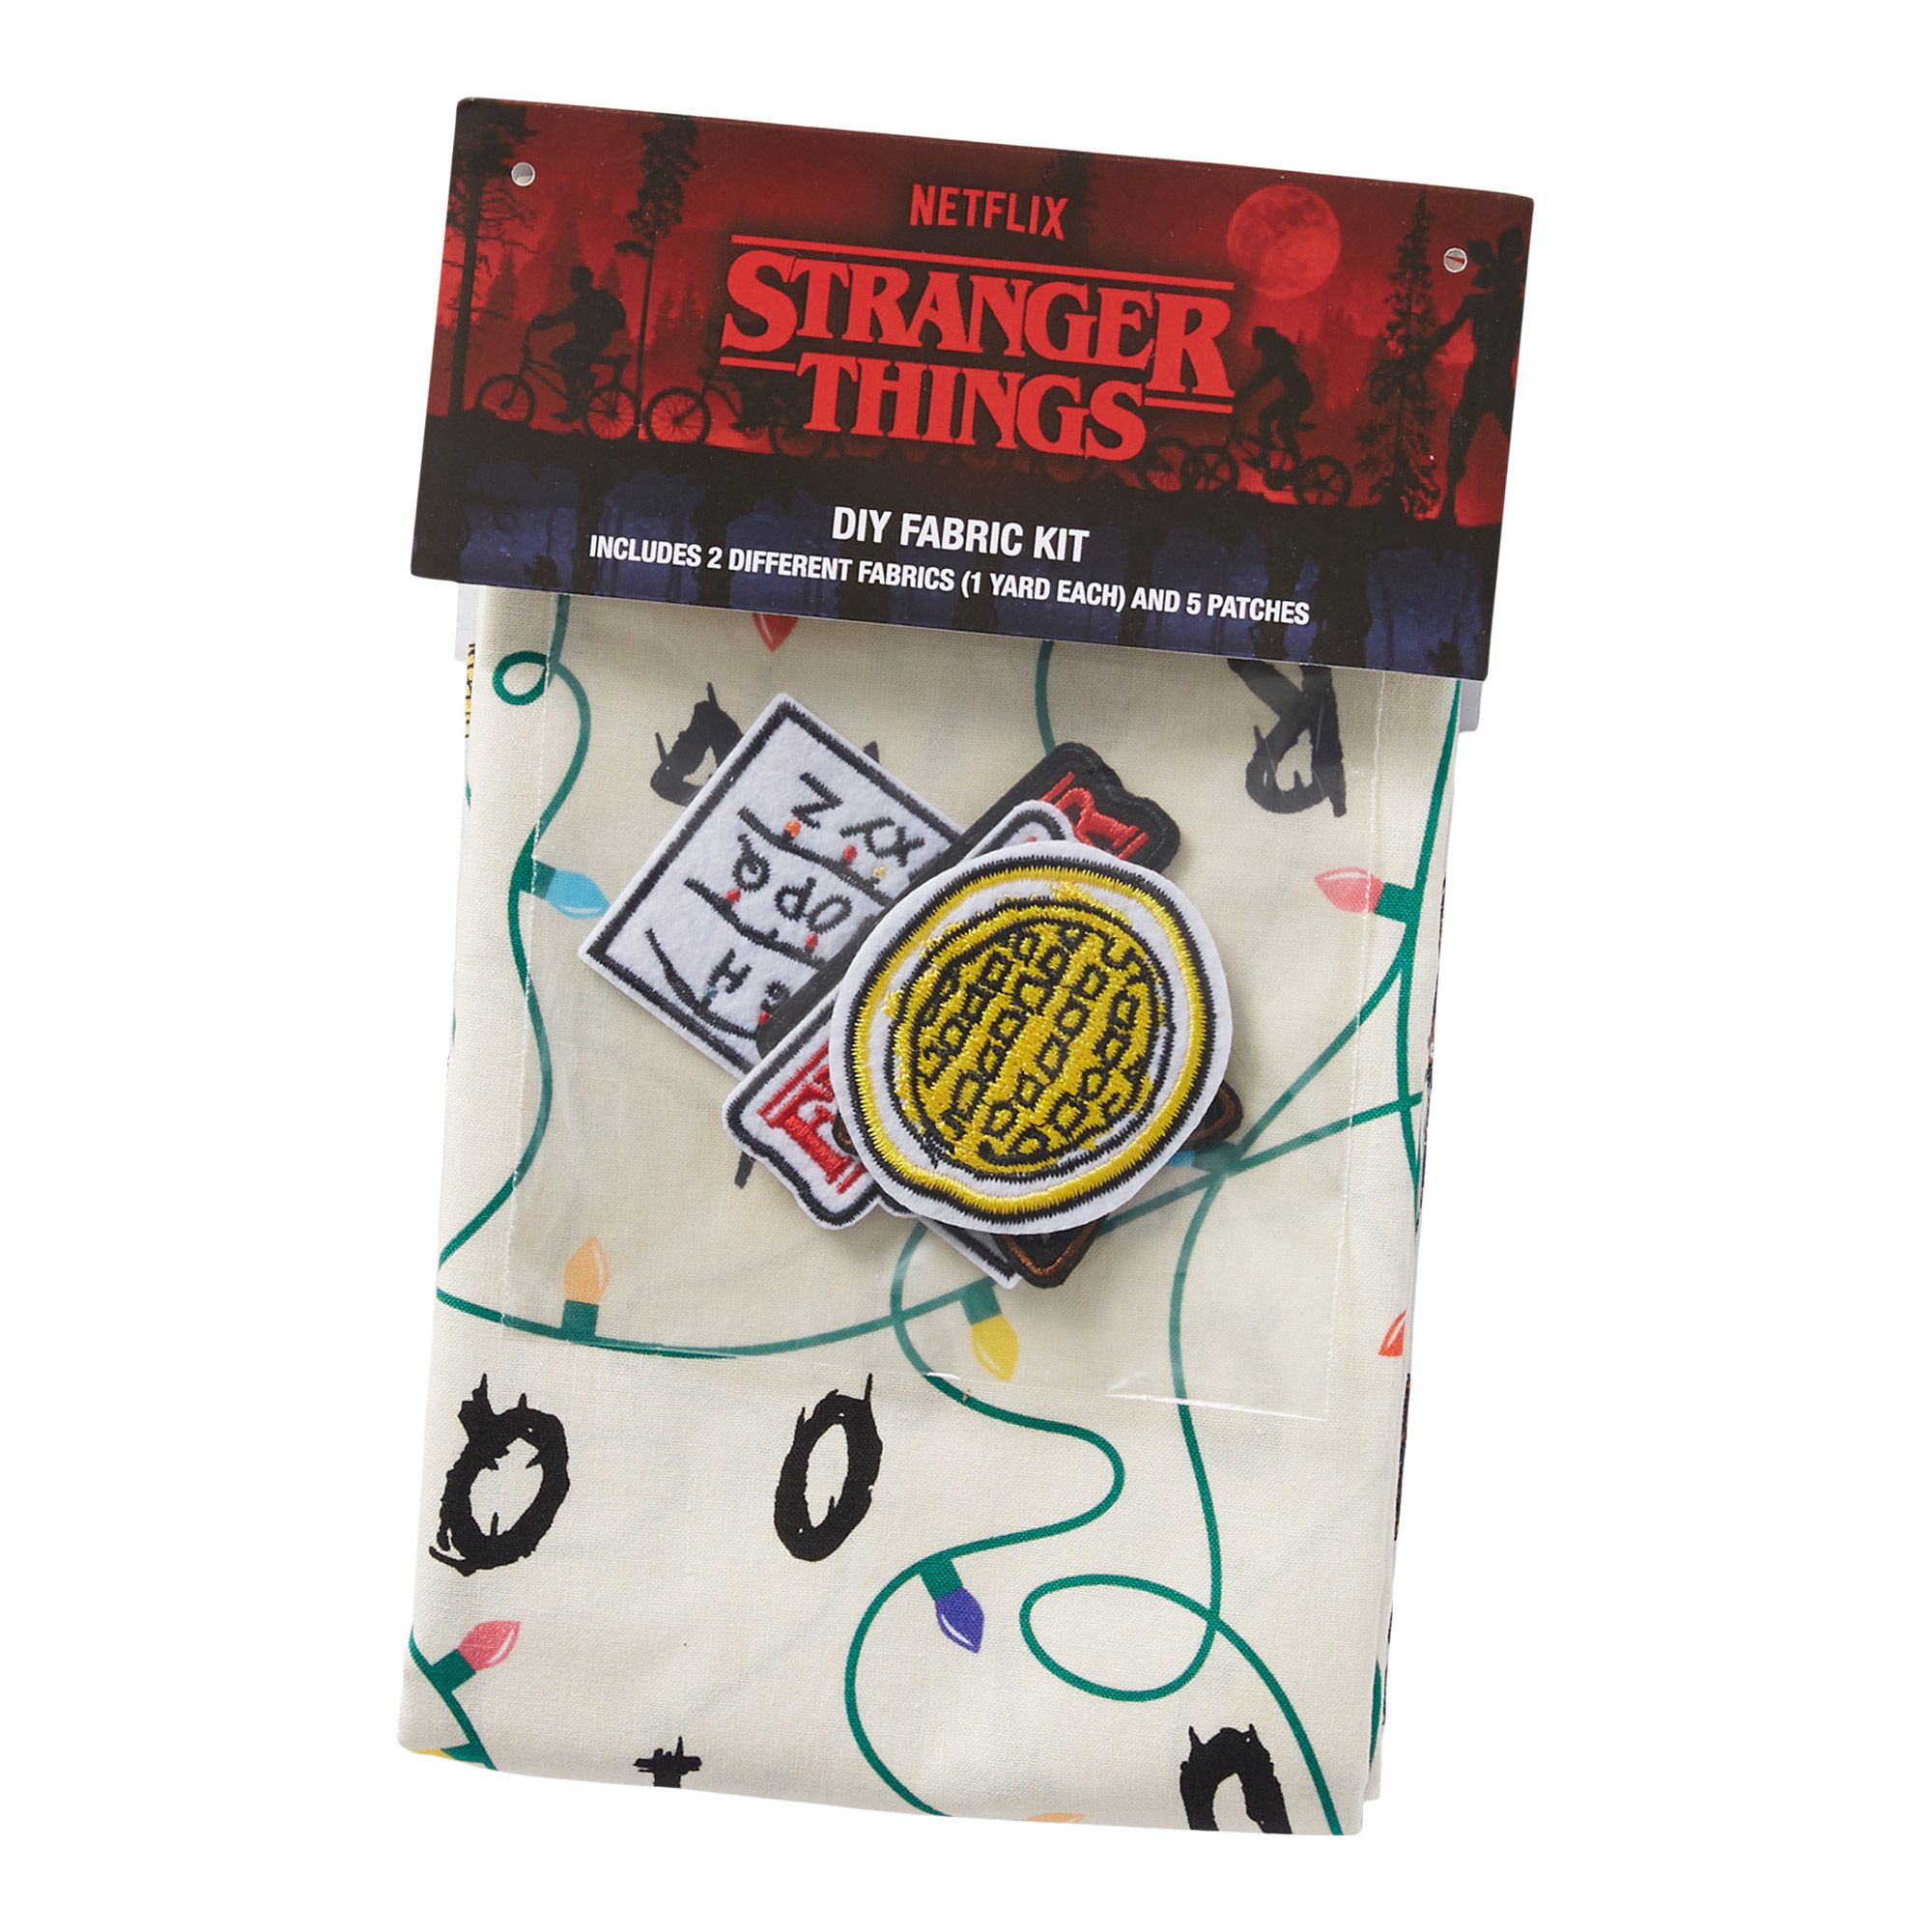 Stranger Things Fabric & Patch DIY Kit